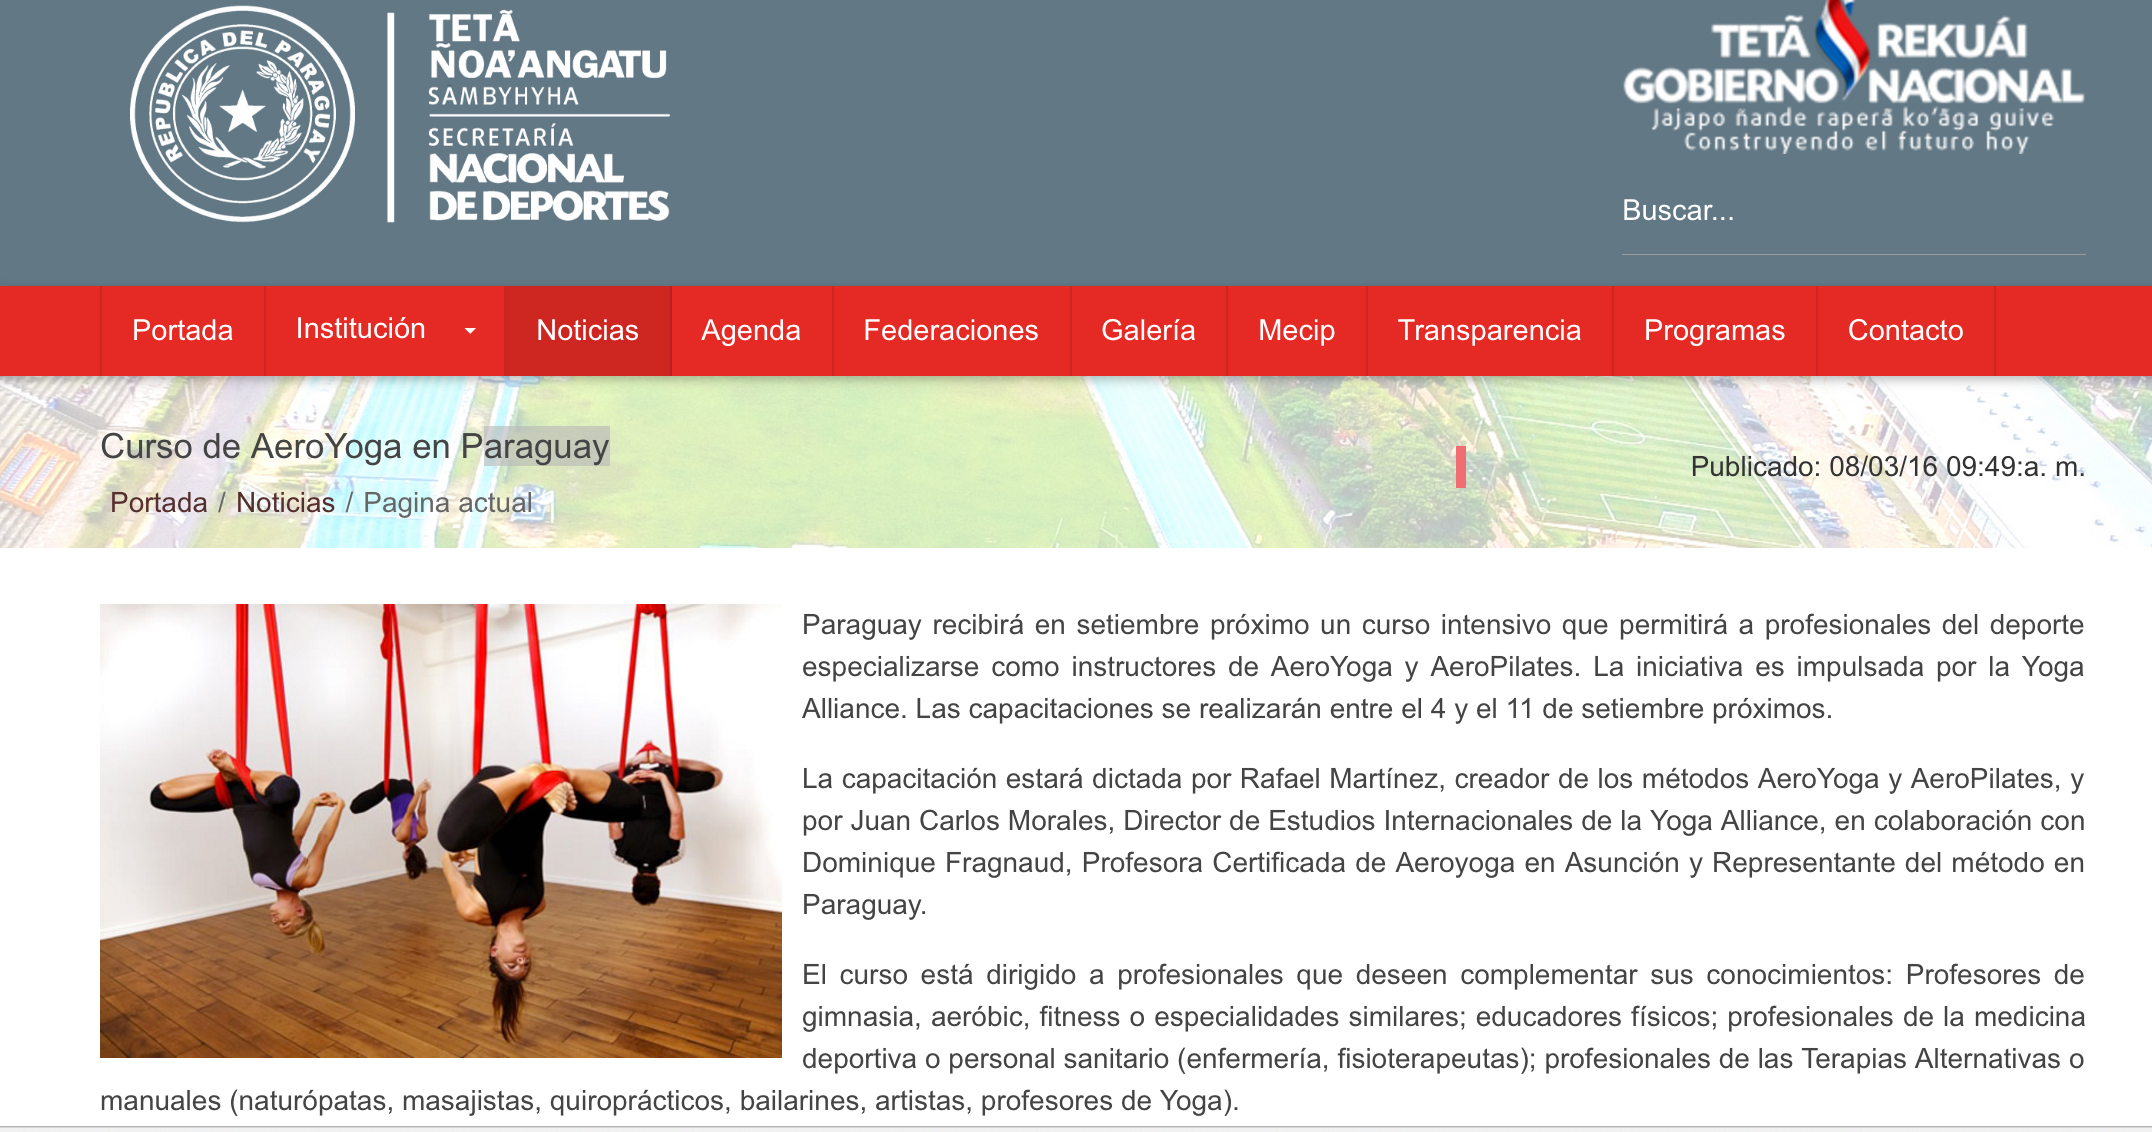 La Secretaría Nacional de Deportes de Paraguay Anuncia el Curso Profesores AeroYoga® con Rafael Martínez